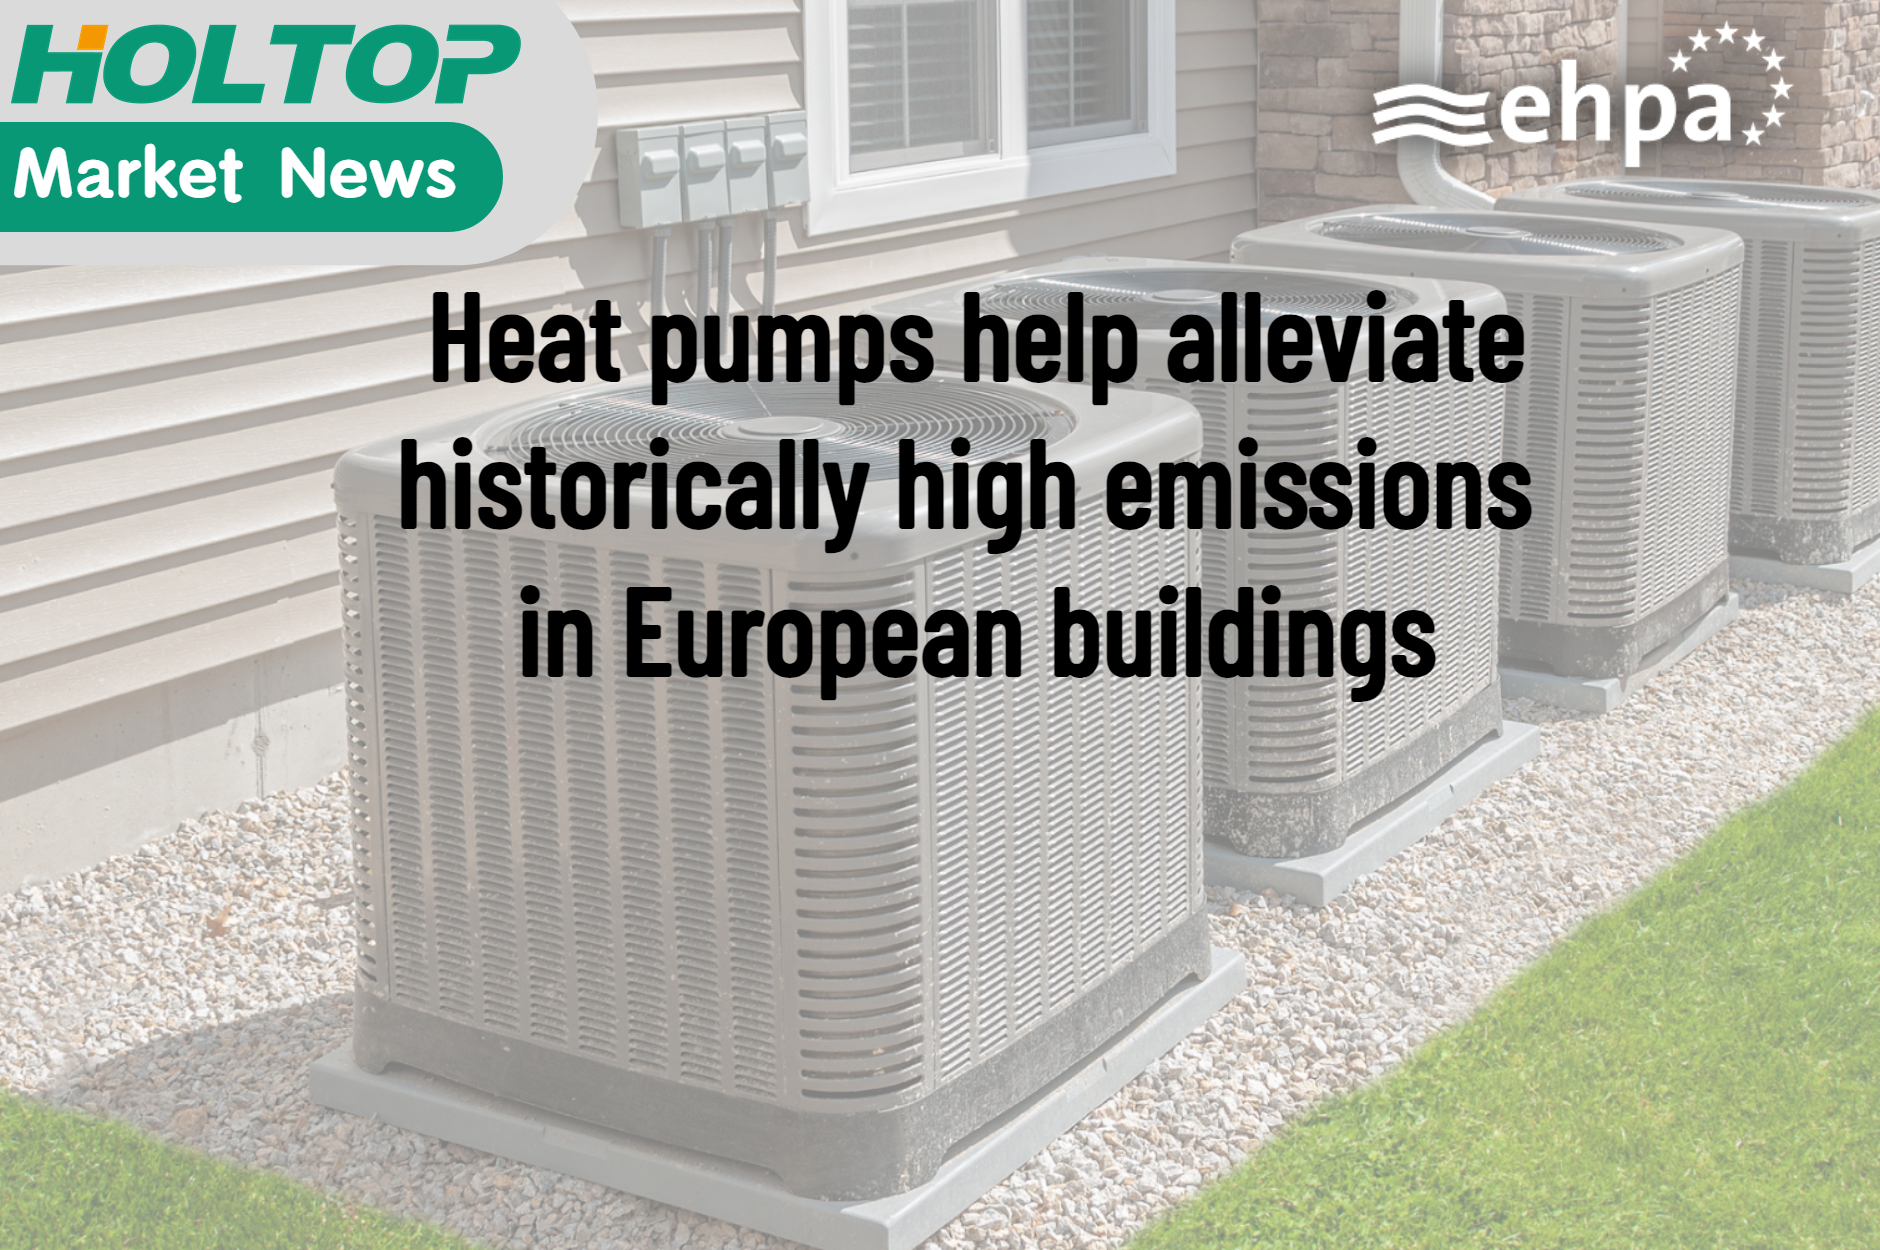 Wärmepumpen tragen dazu bei, die historisch hohen Emissionen in europäischen Gebäuden zu verringern